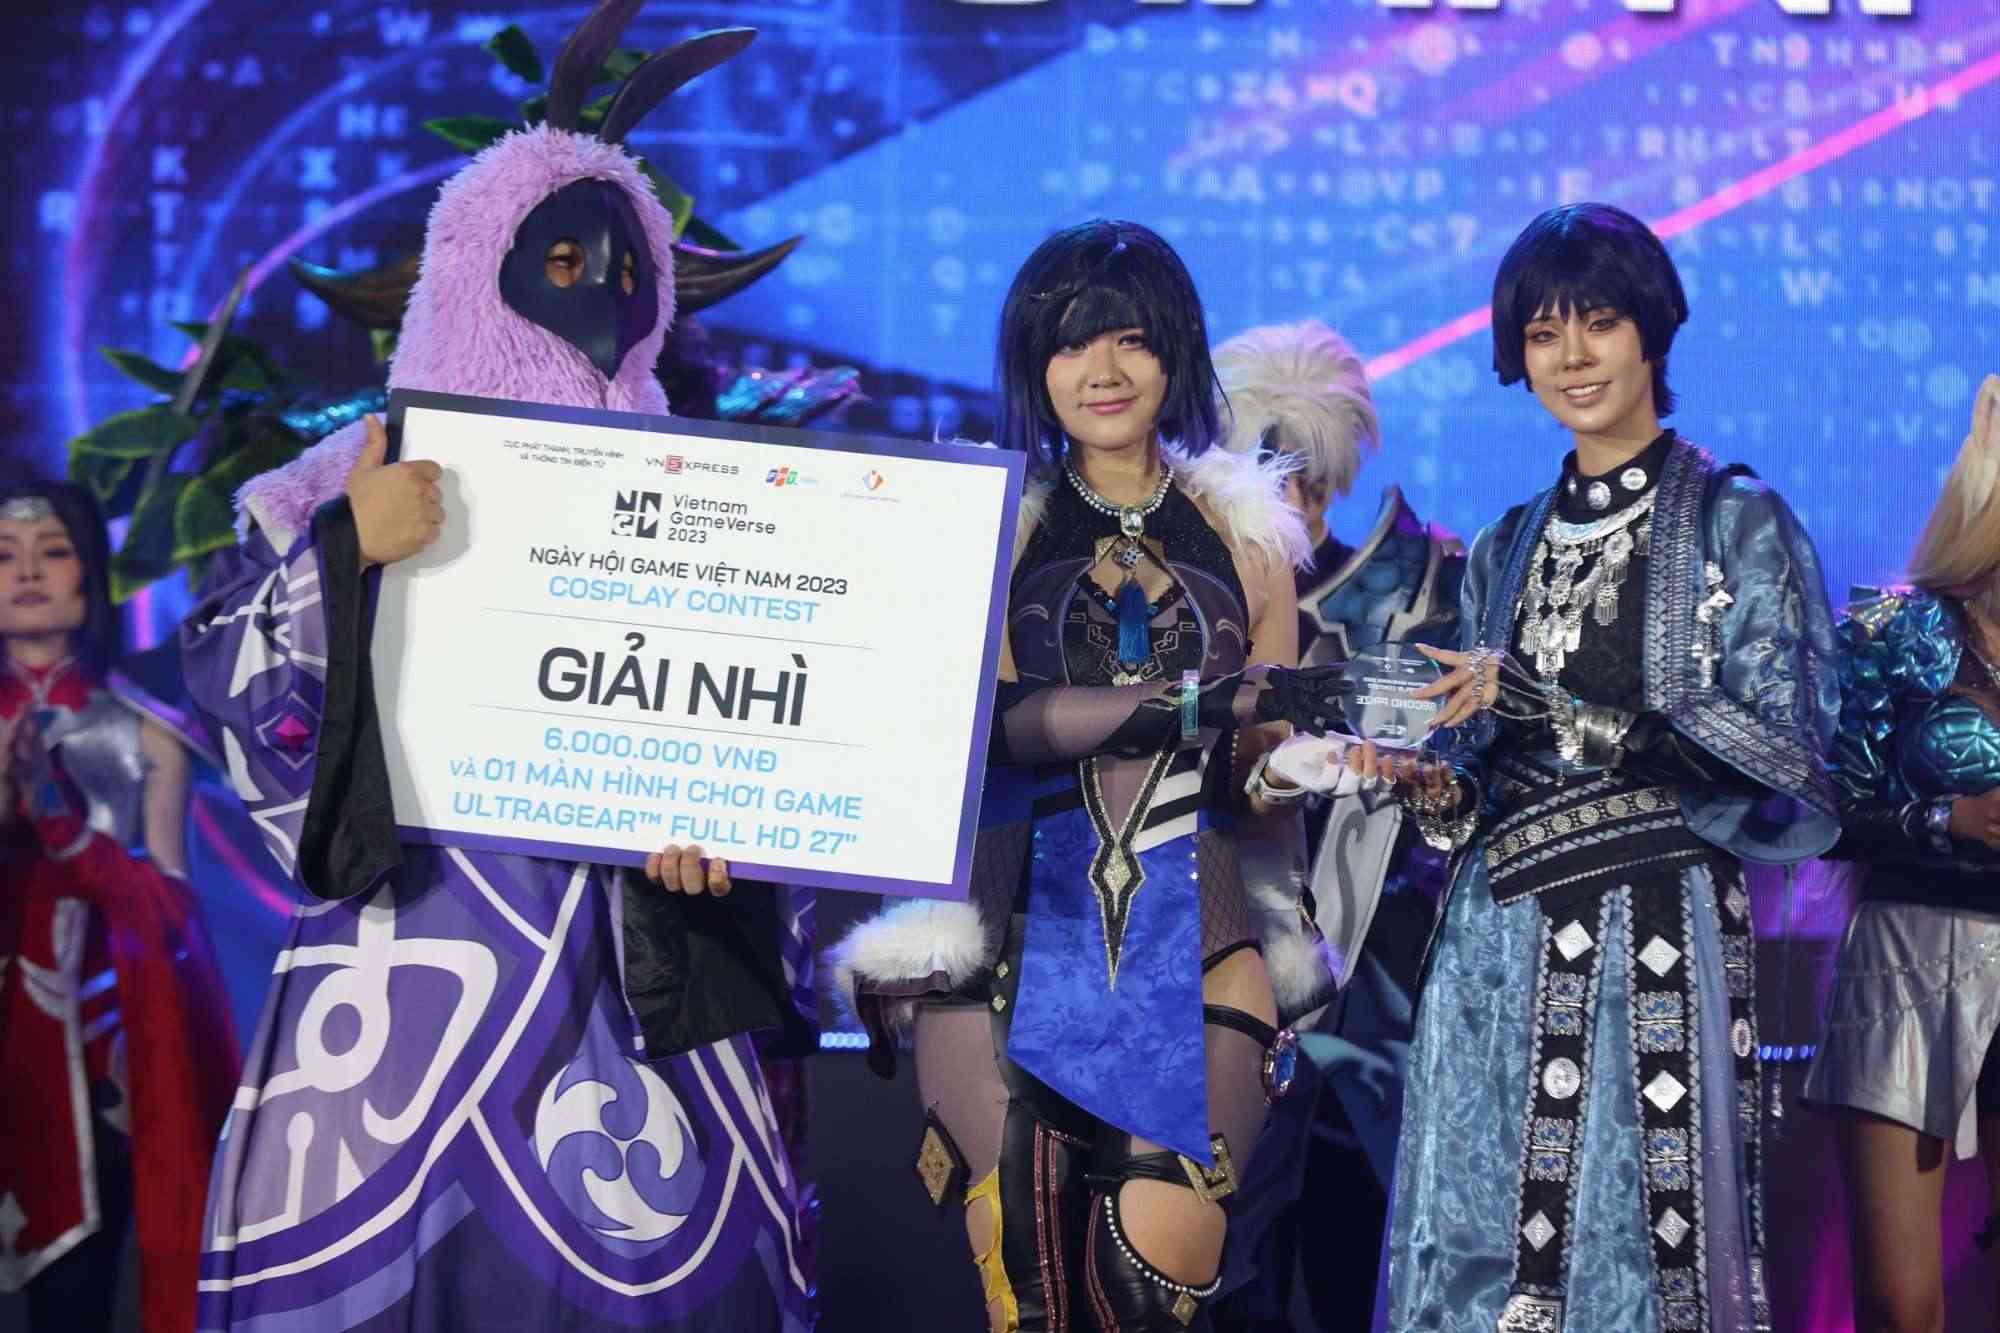 Giải nhì thuộc về team Yelan - Genshin Impact